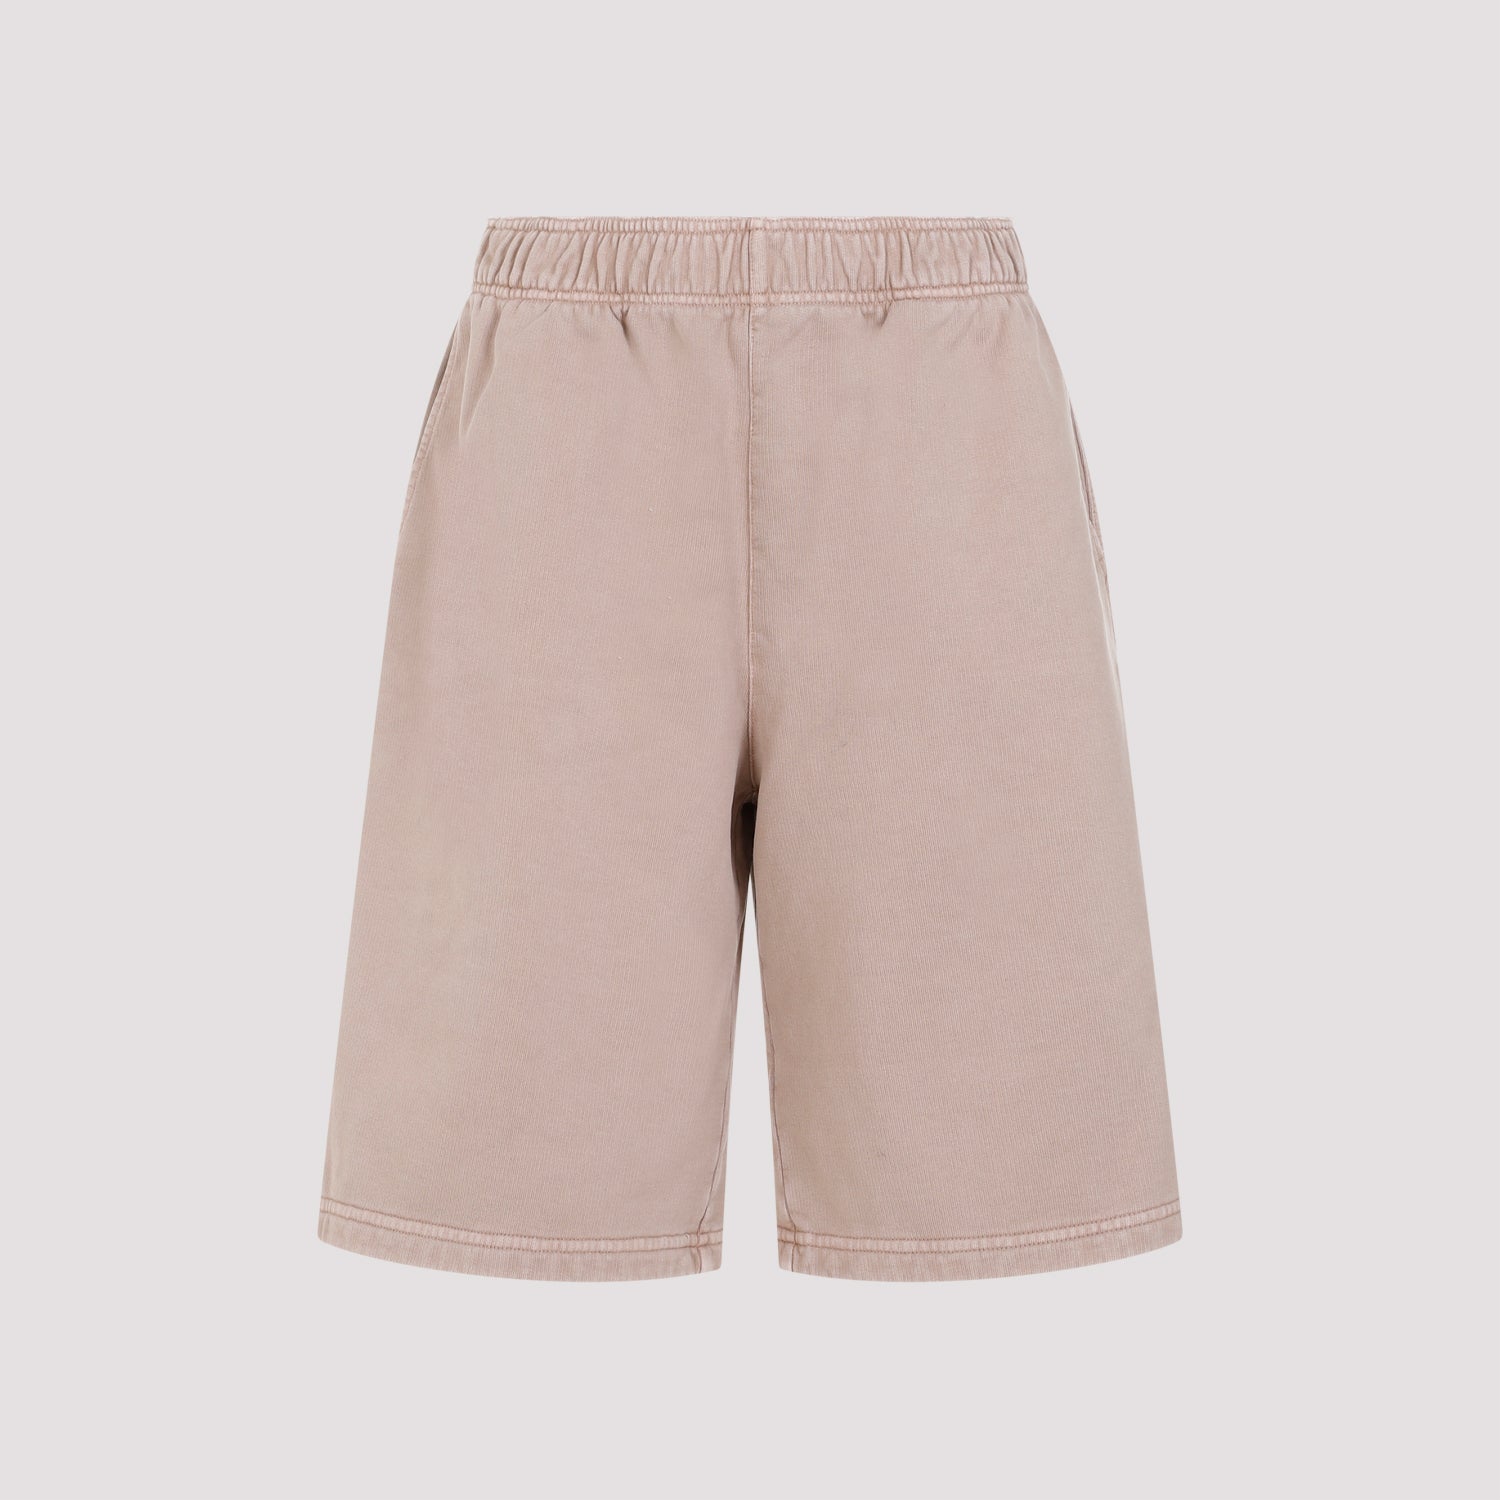 Prada Pink Cotton Shorts